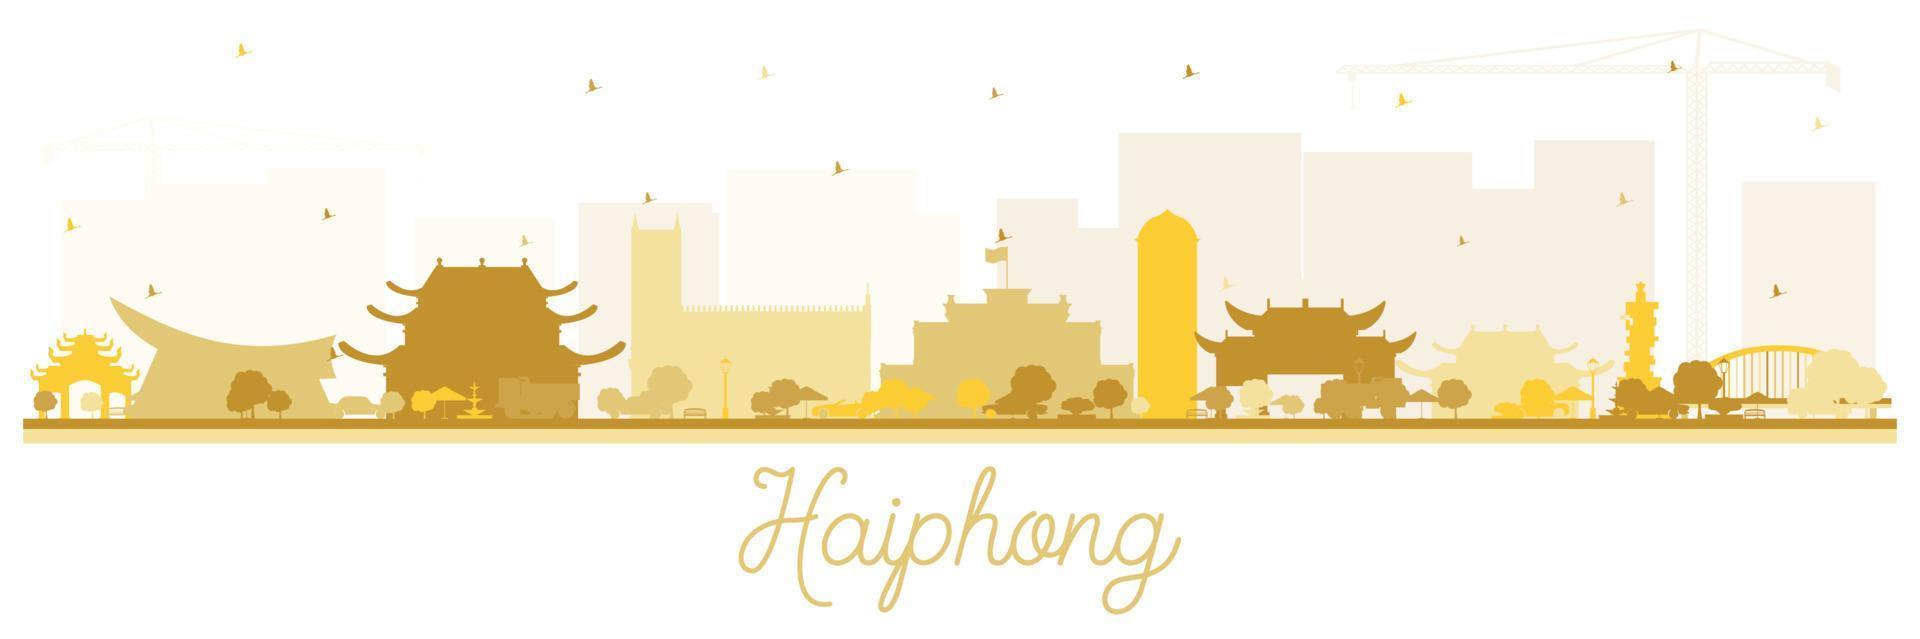 silhueta do horizonte da cidade de haiphong vietnã com edifícios dourados isolados no branco. vetor